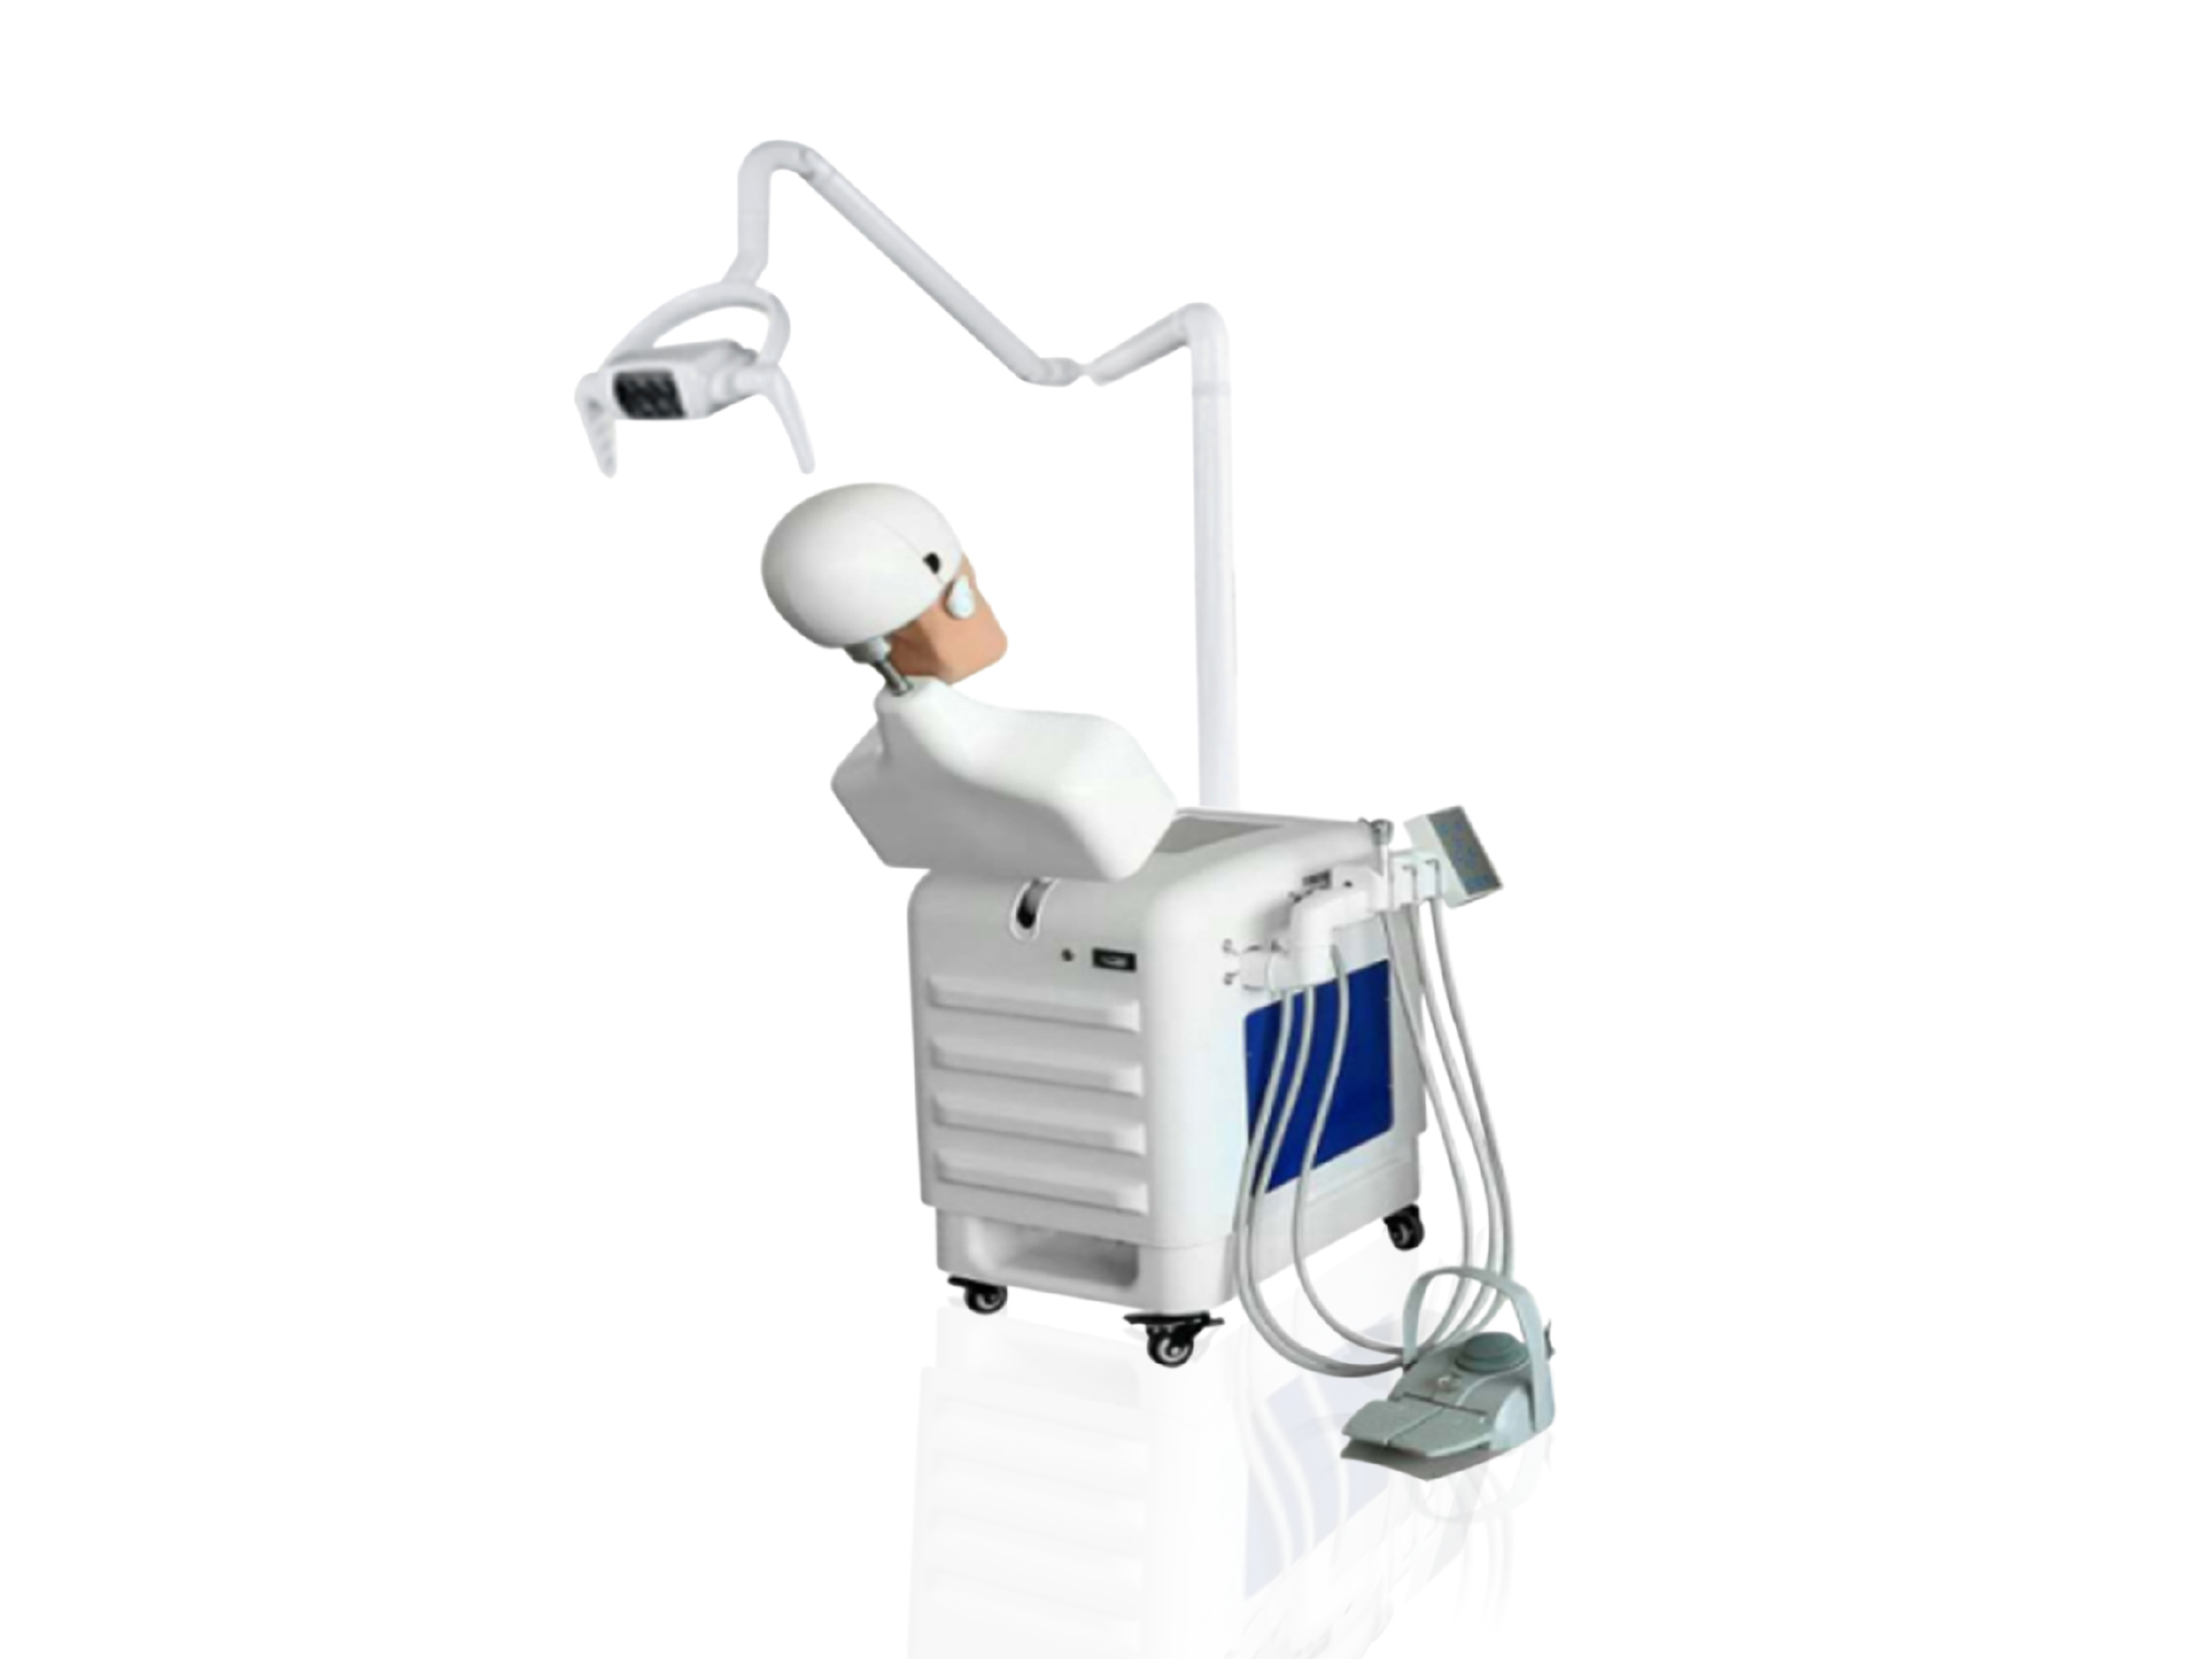 Η Shanghai JPS Medical Co., Ltd αποκαλύπτει το Advanced Dental Simulator Model JM380 για βελτιωμένη οδοντιατρική εκπαίδευση